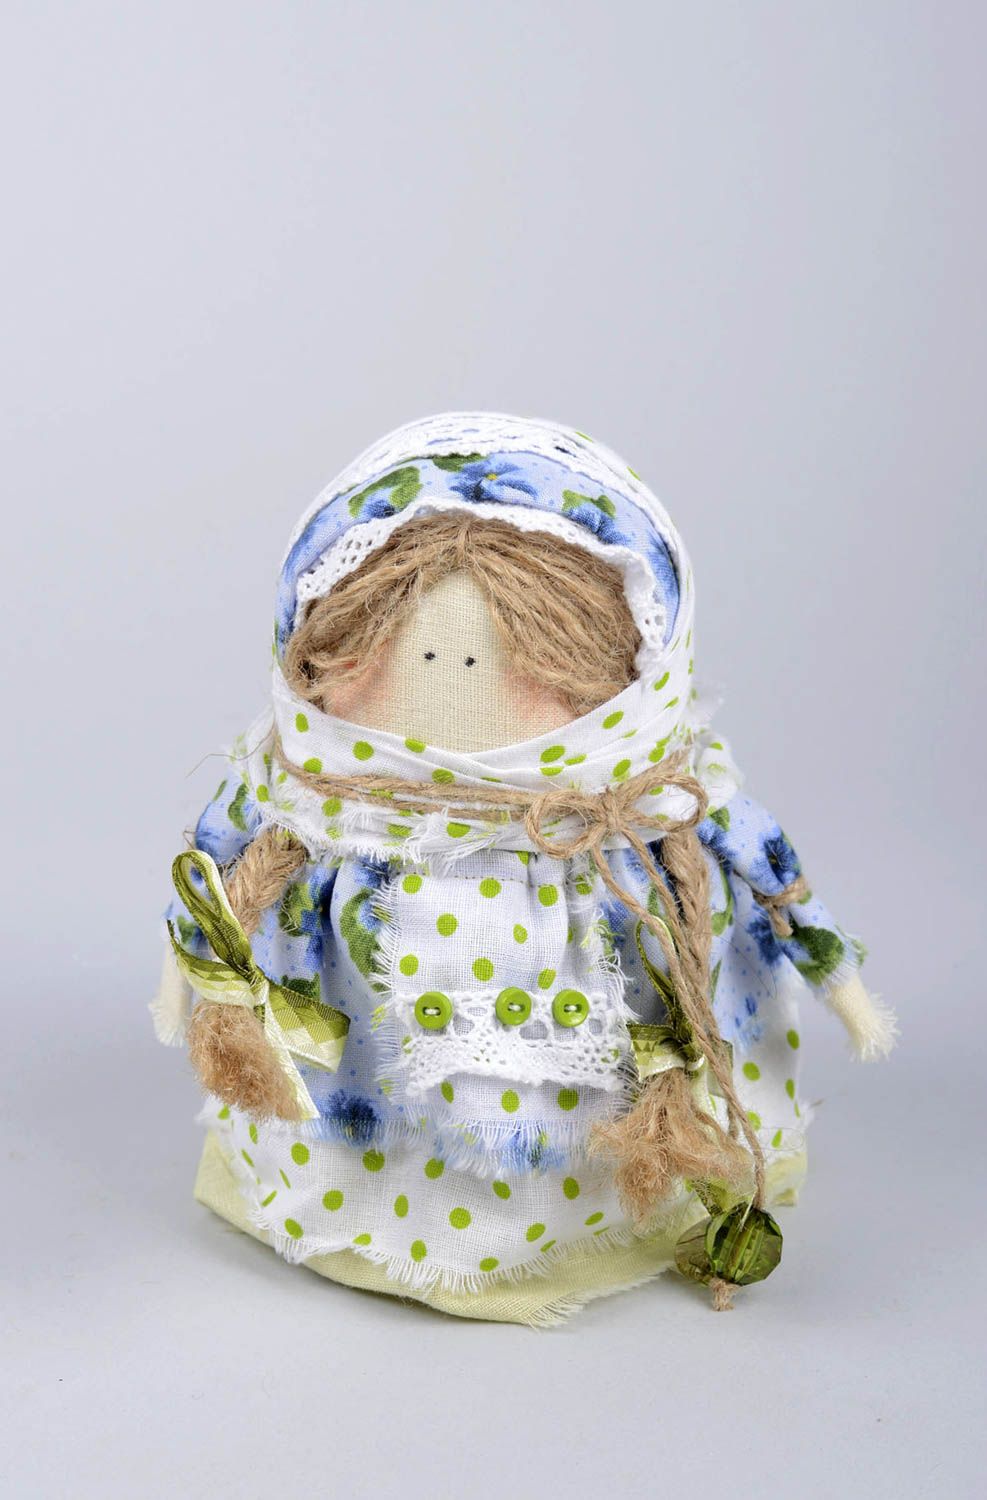  Muñeca de tela hecha a mano juguete tradicional con granos objeto de decoración foto 2